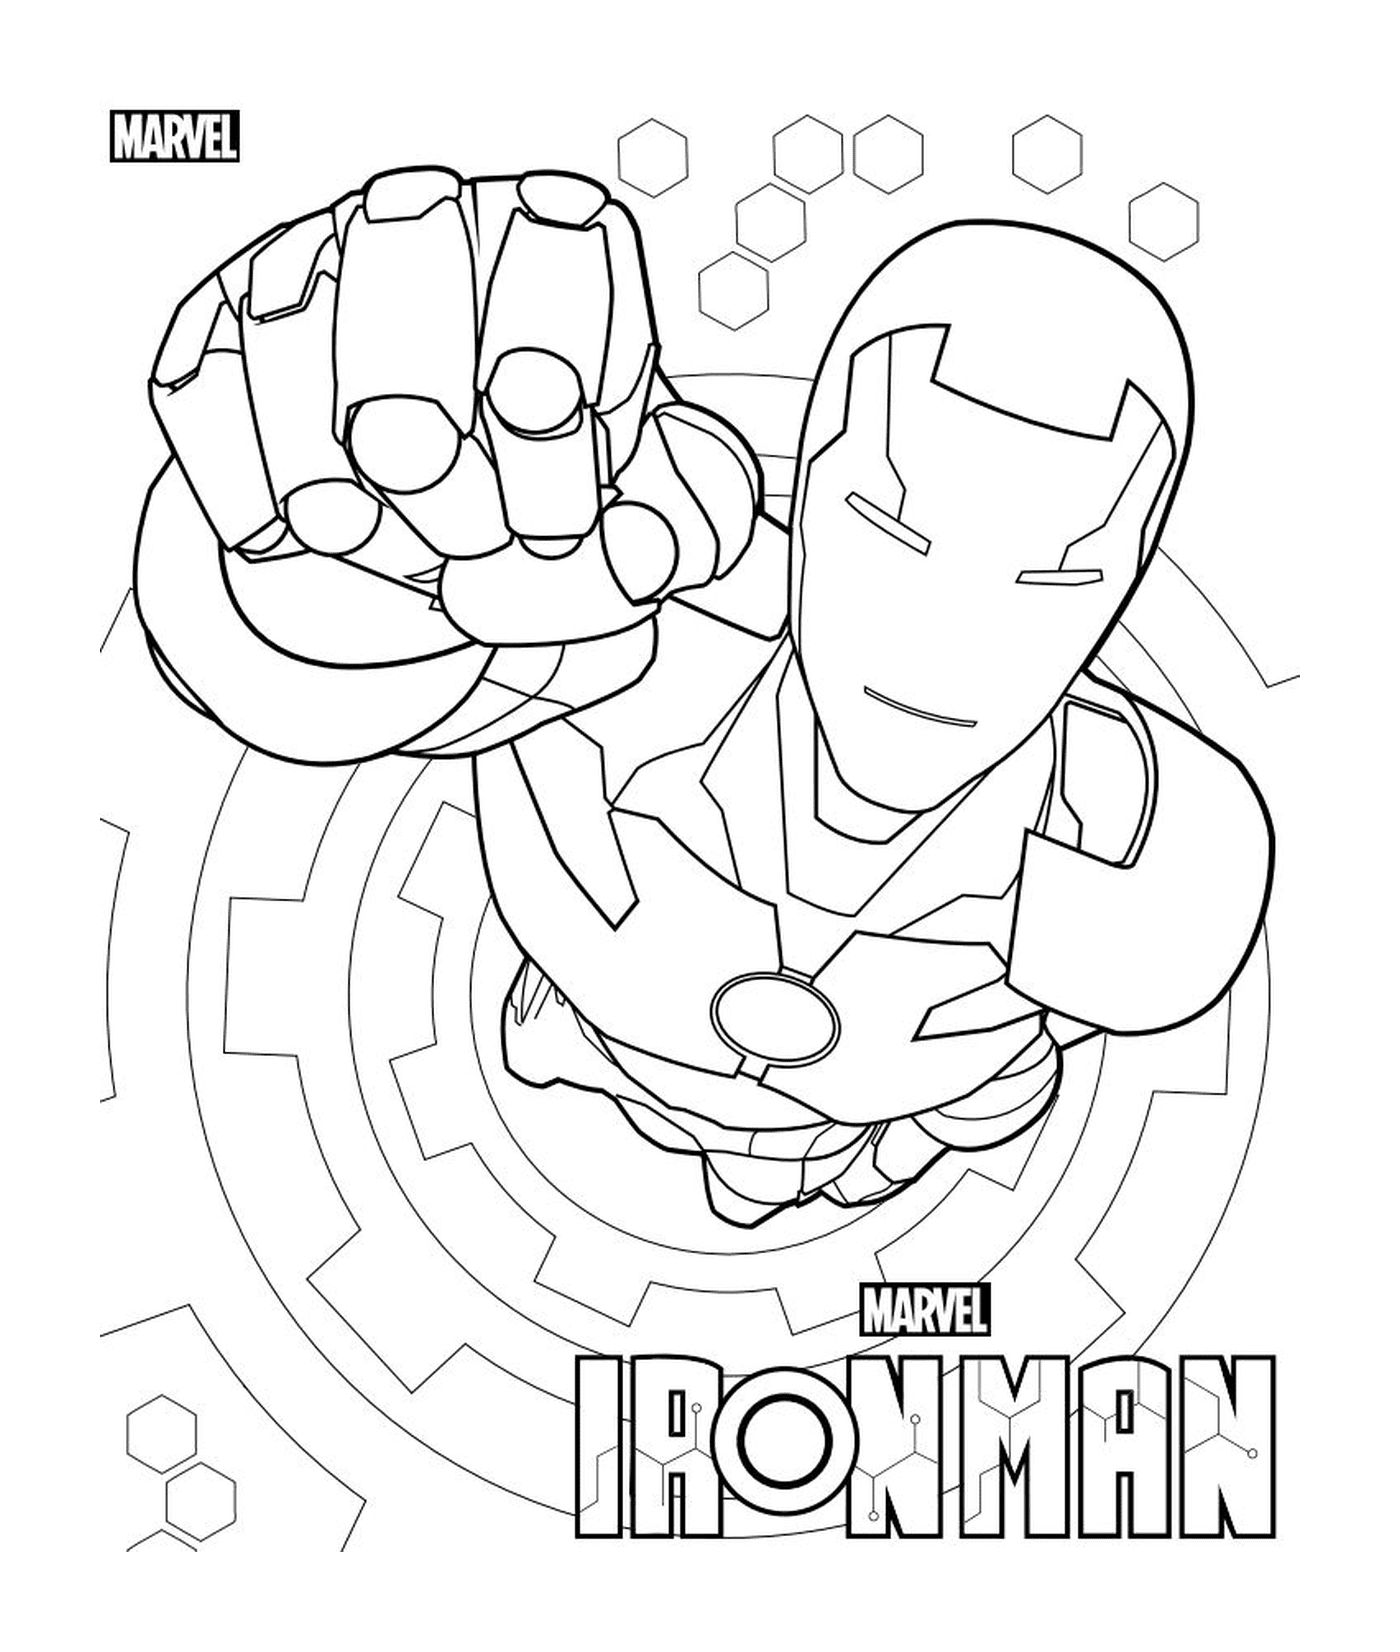  An image of Iron Man 